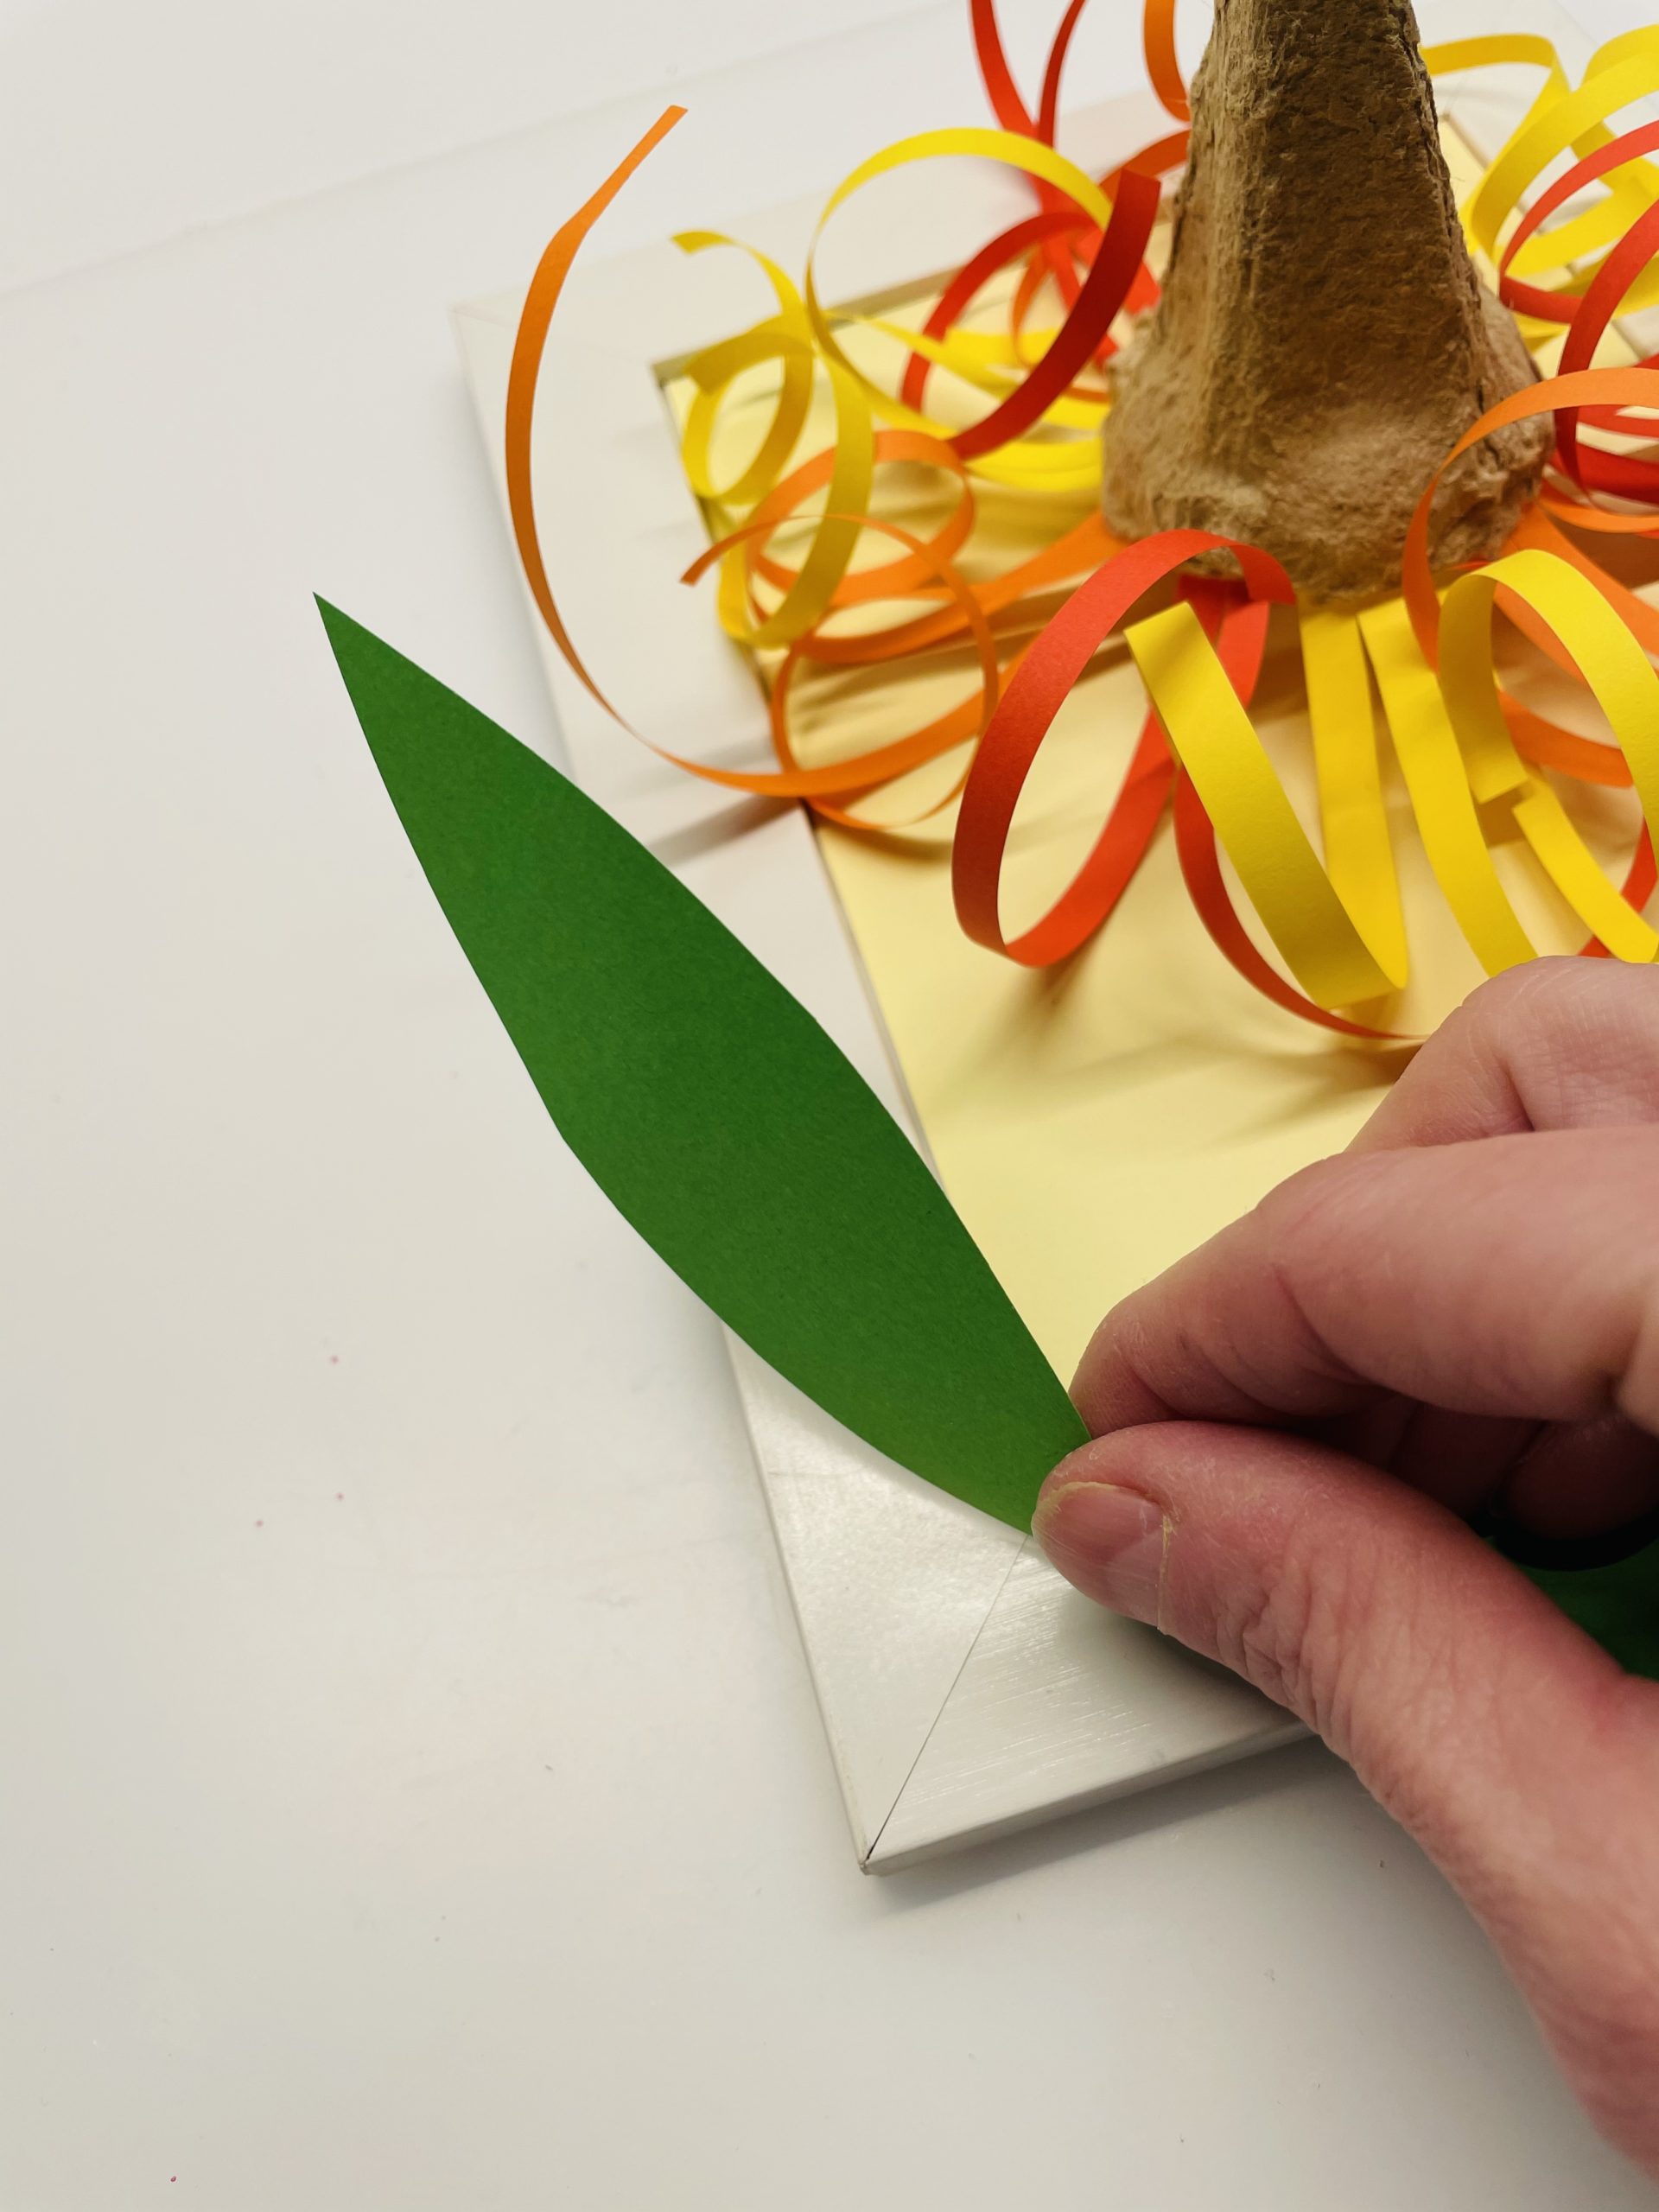 Bild zum Schritt 28 für das Bastel- und DIY-Abenteuer für Kinder: 'Faltet nun die Blätter L-förmig zueinander.'